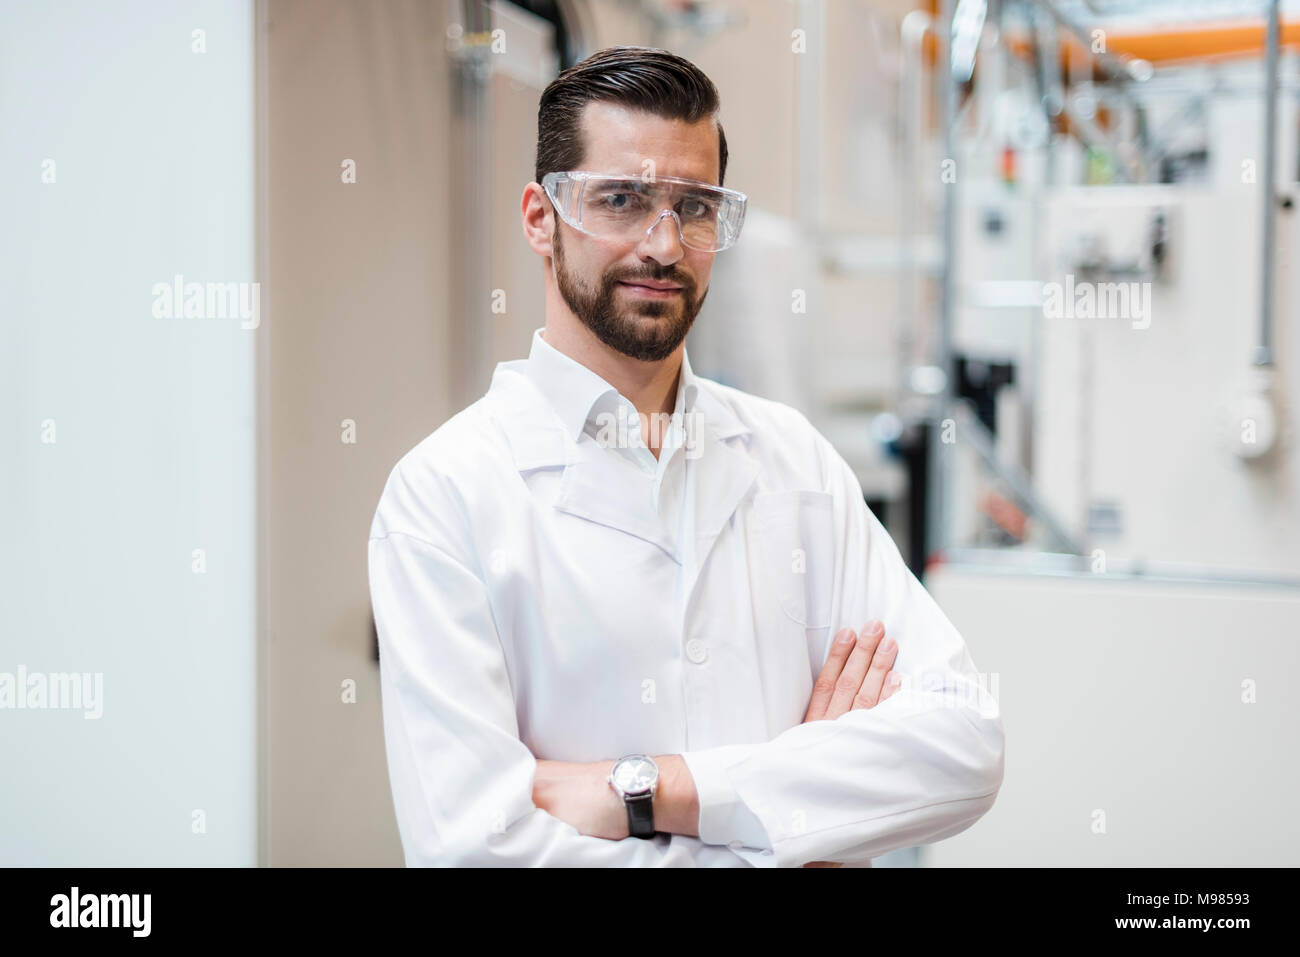 Retrato del hombre vestido con bata de laboratorio y gafas de seguridad en la fábrica. Foto de stock